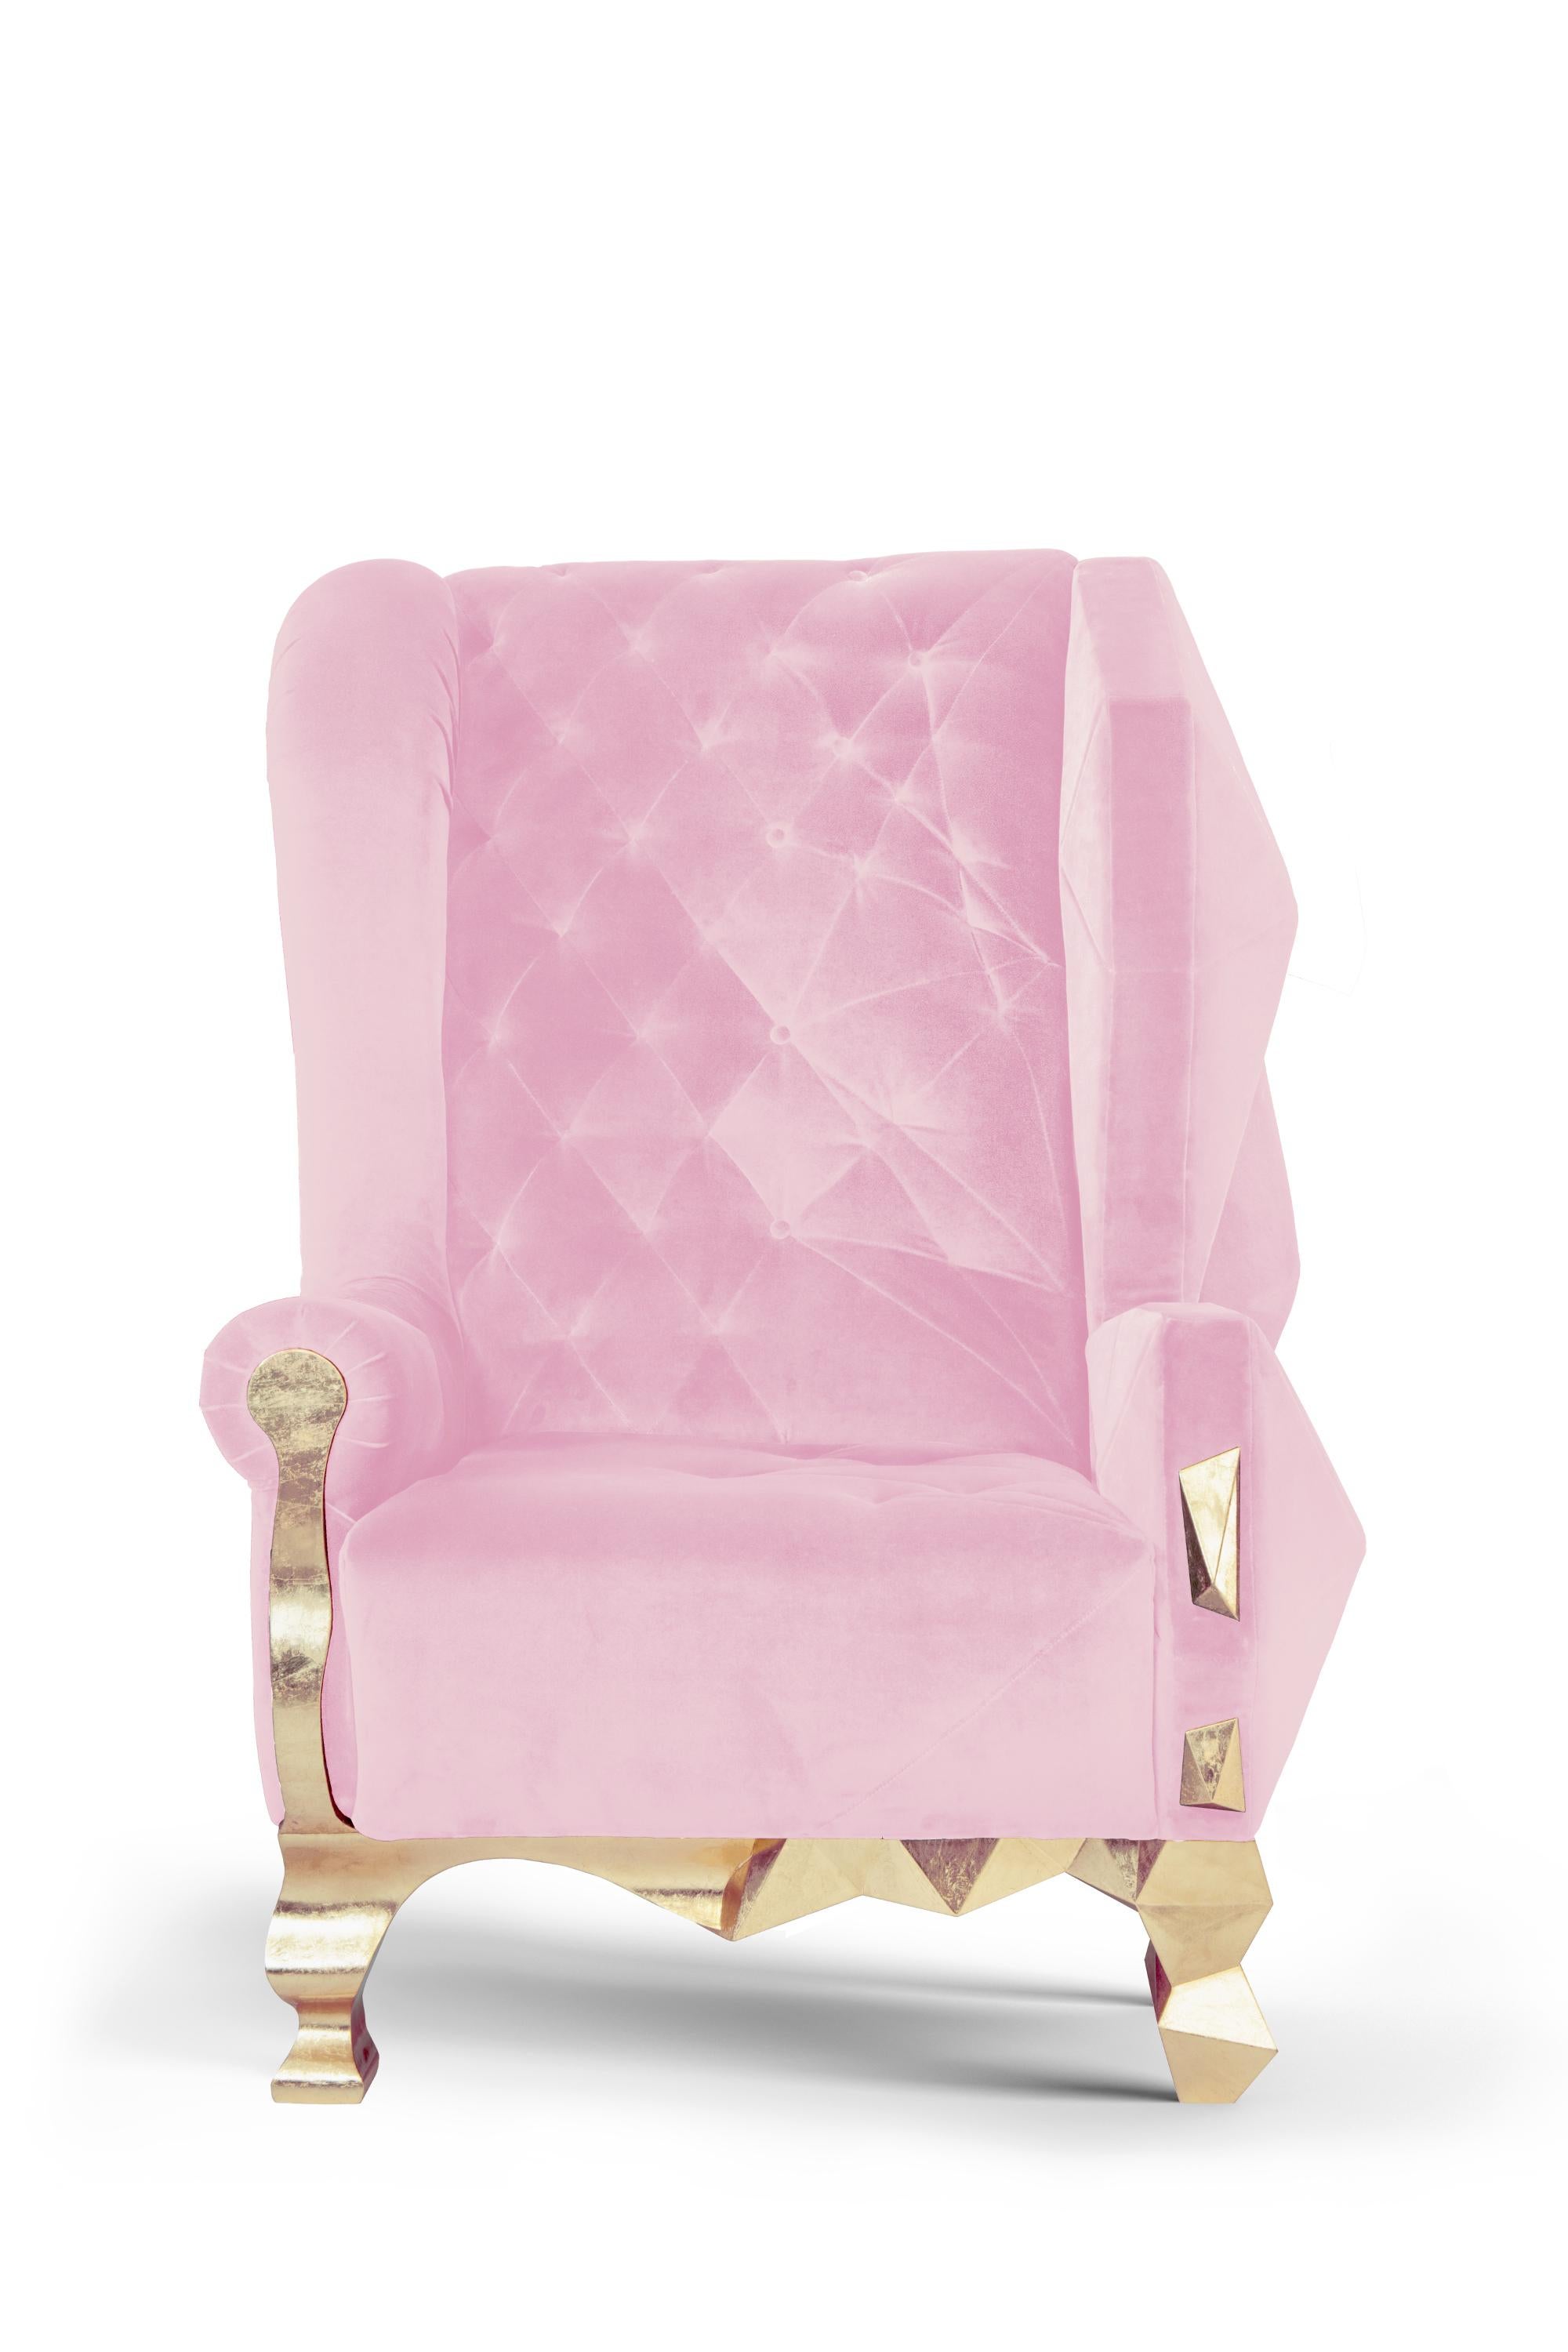 Modern Velvet Pink Rockchair by Royal Stranger For Sale